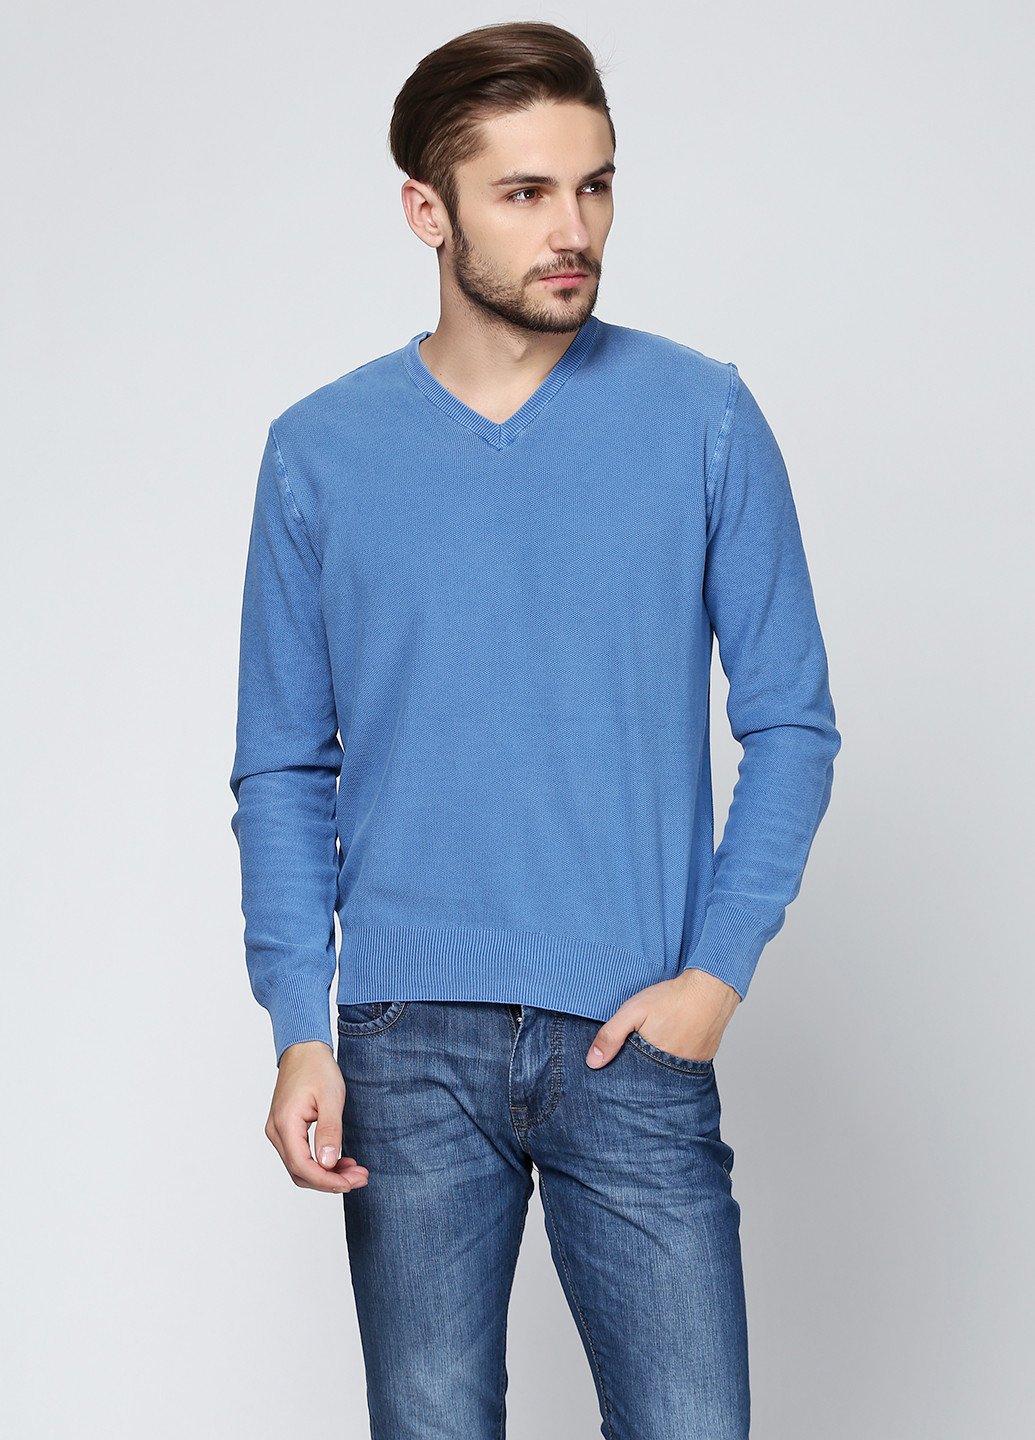 Голубой демисезонный пуловер пуловер Cashmere